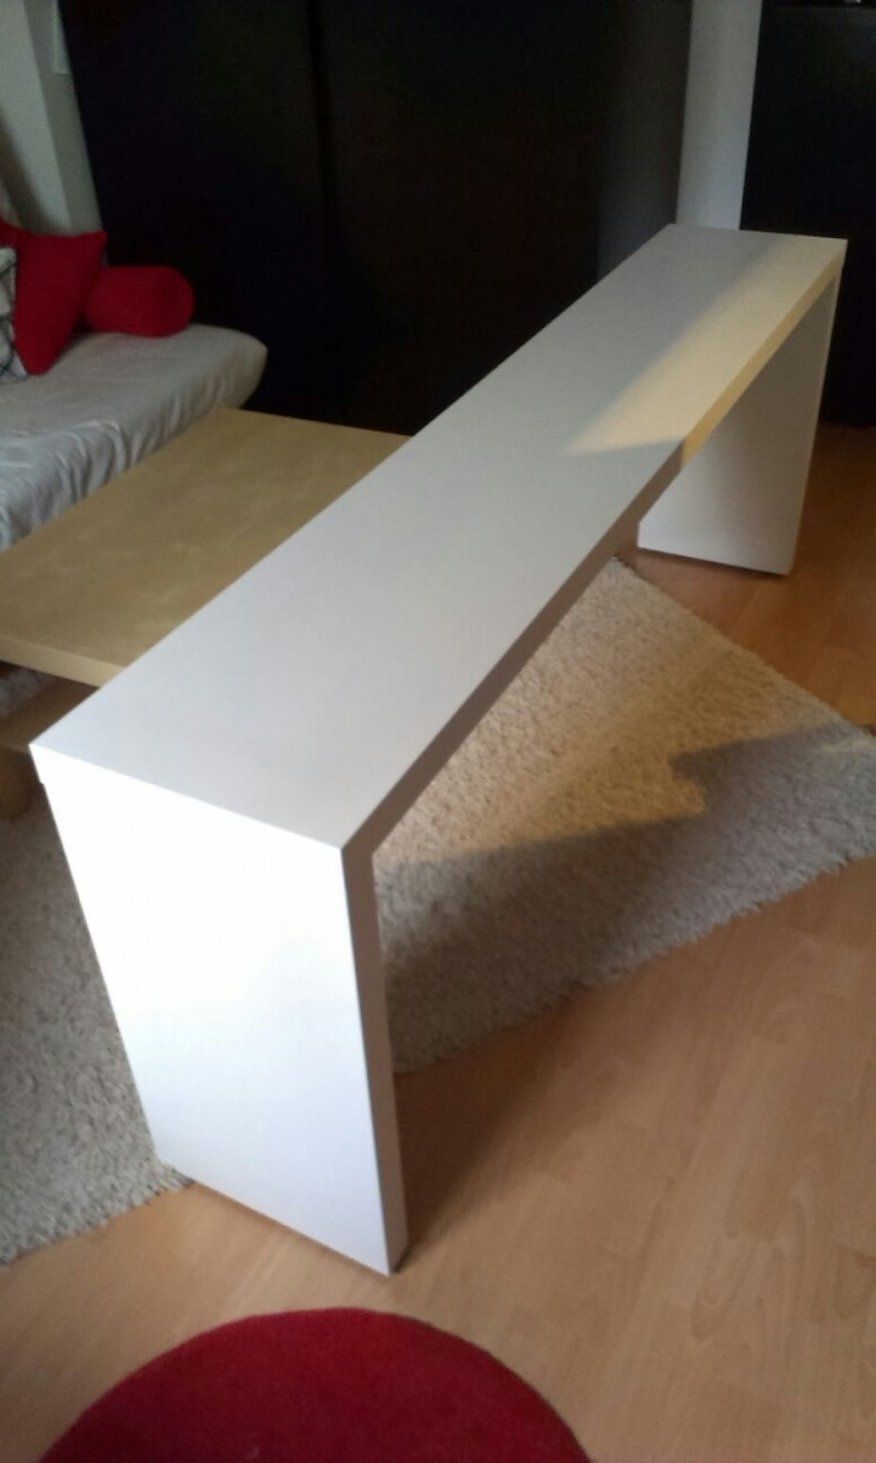 Spannende Bett Auf Rollen Ikea Gebraucht Ikea Malm Tisch Mit Rollen von Tisch Mit Rollen Ikea Bild